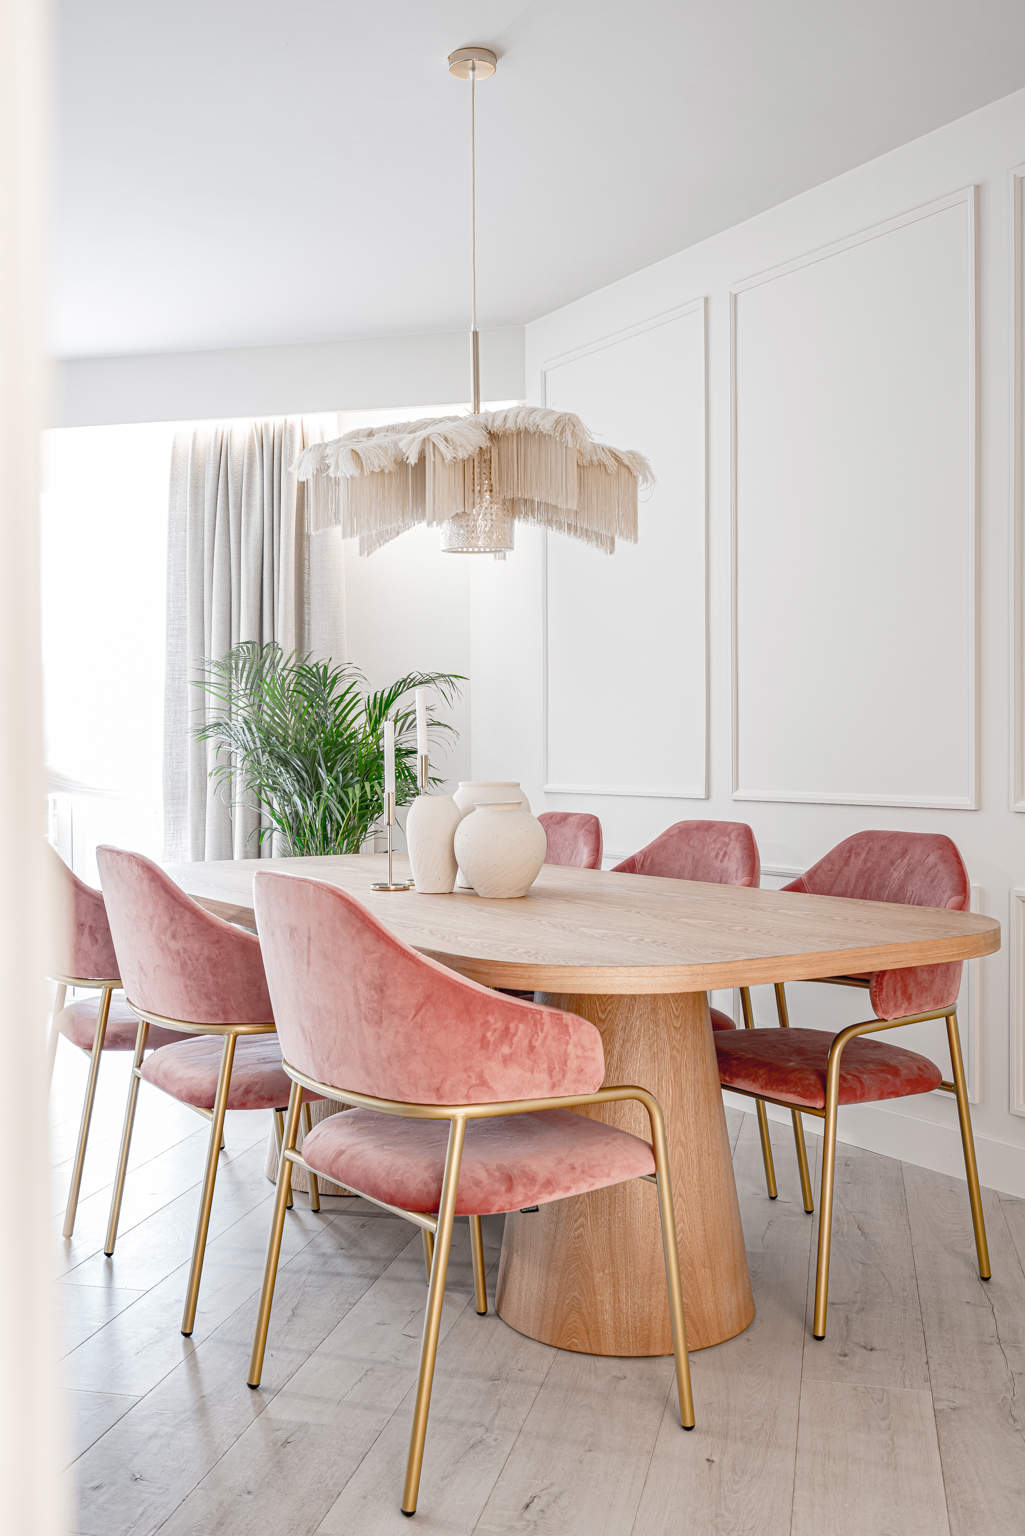 Comedor después de la reforma con sillas tapizadas rosas, molduras en la pared, mesa de madera y brazos en metal dorado..